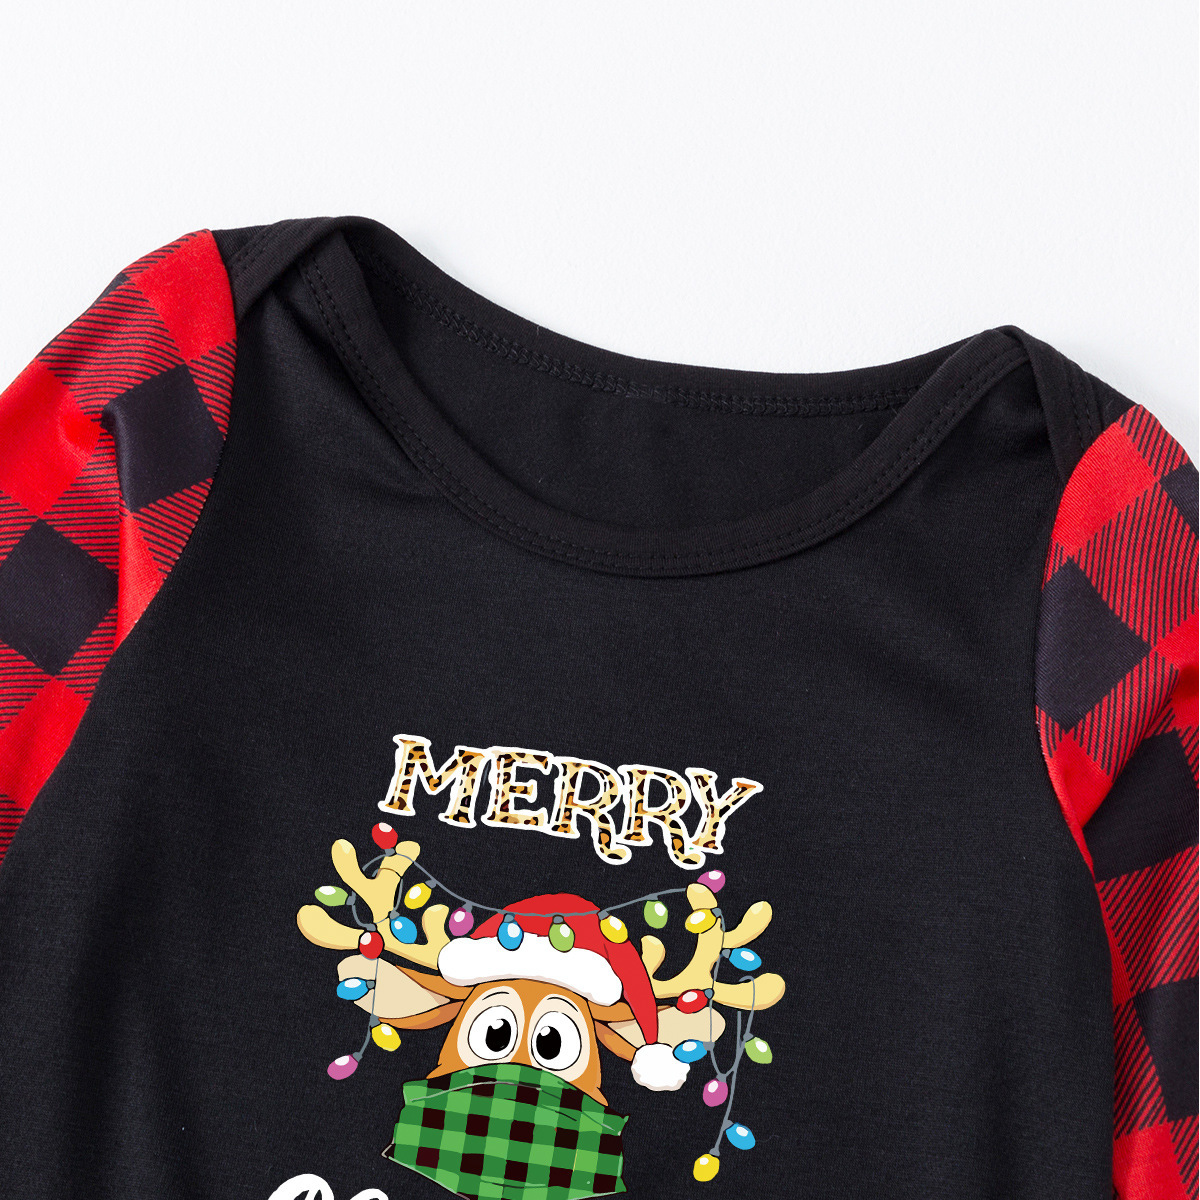 Plus size winter elk print Christmas parent-child homewear